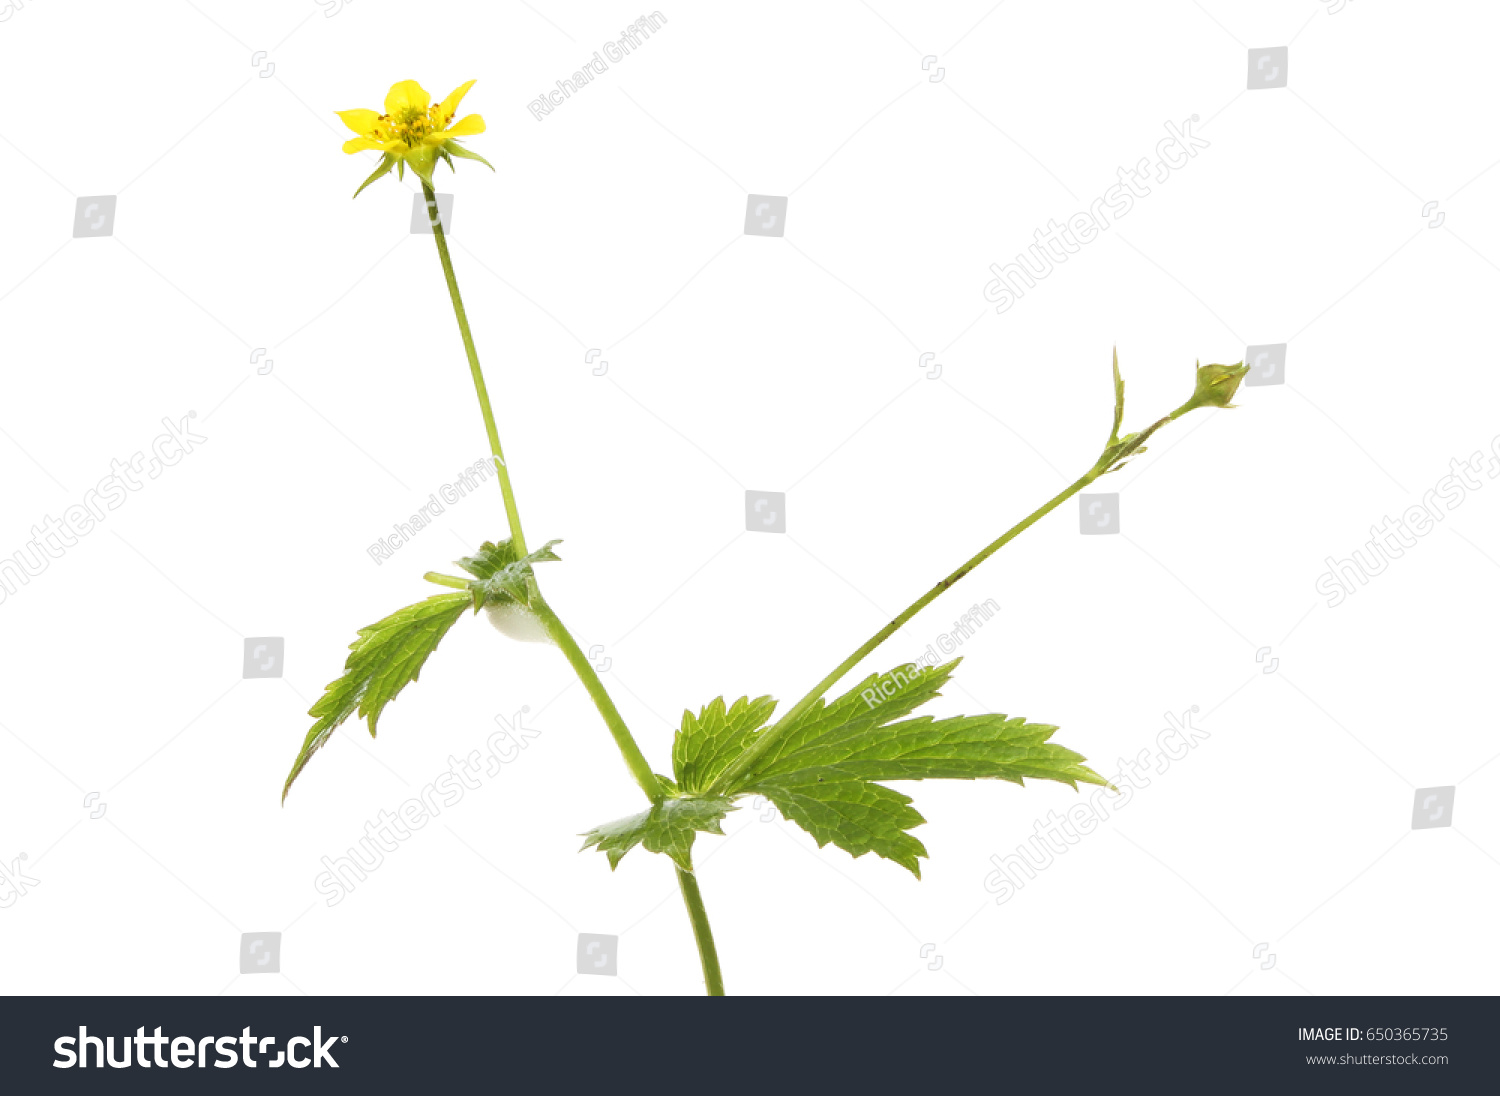 Herb Bennet Geum Urbanum Flower Foliage Stock Photo Edit Now 650365735